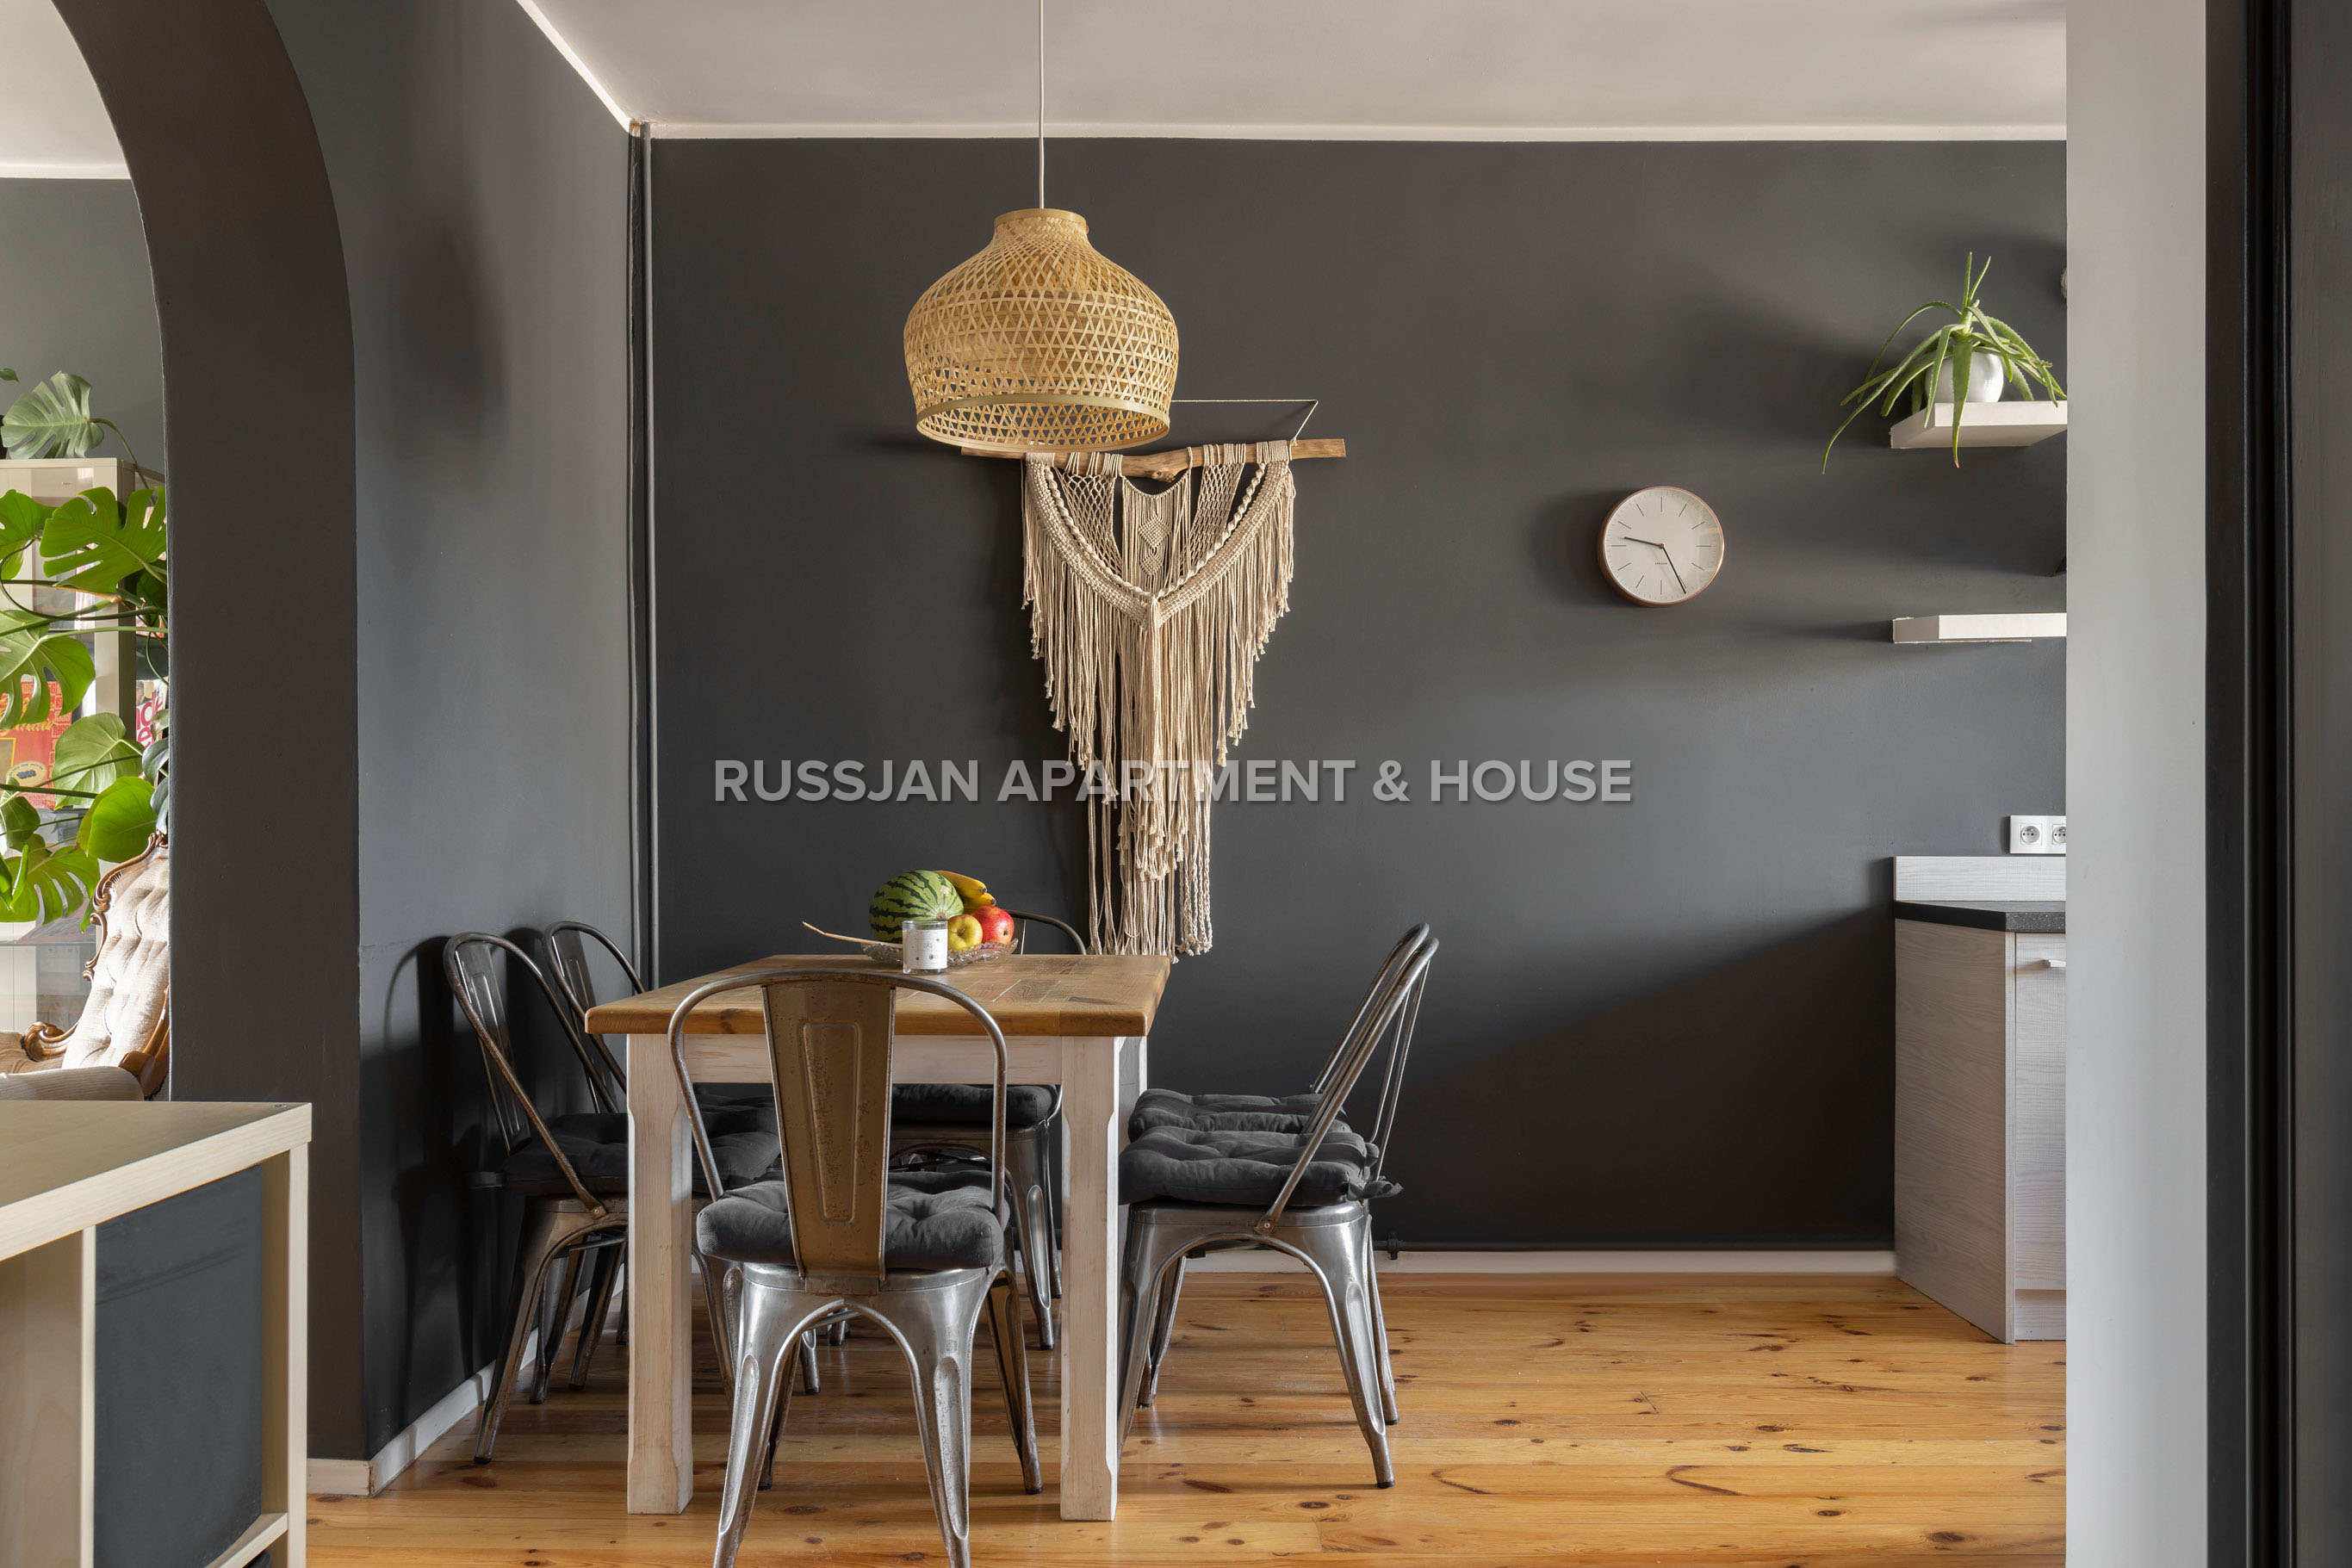 Apartament Gdańsk Strzyża - Duży i przestronny, 5-pokojowy apartament zlokalizowany w spokojnej, zielonej dzielnicy - Russjan